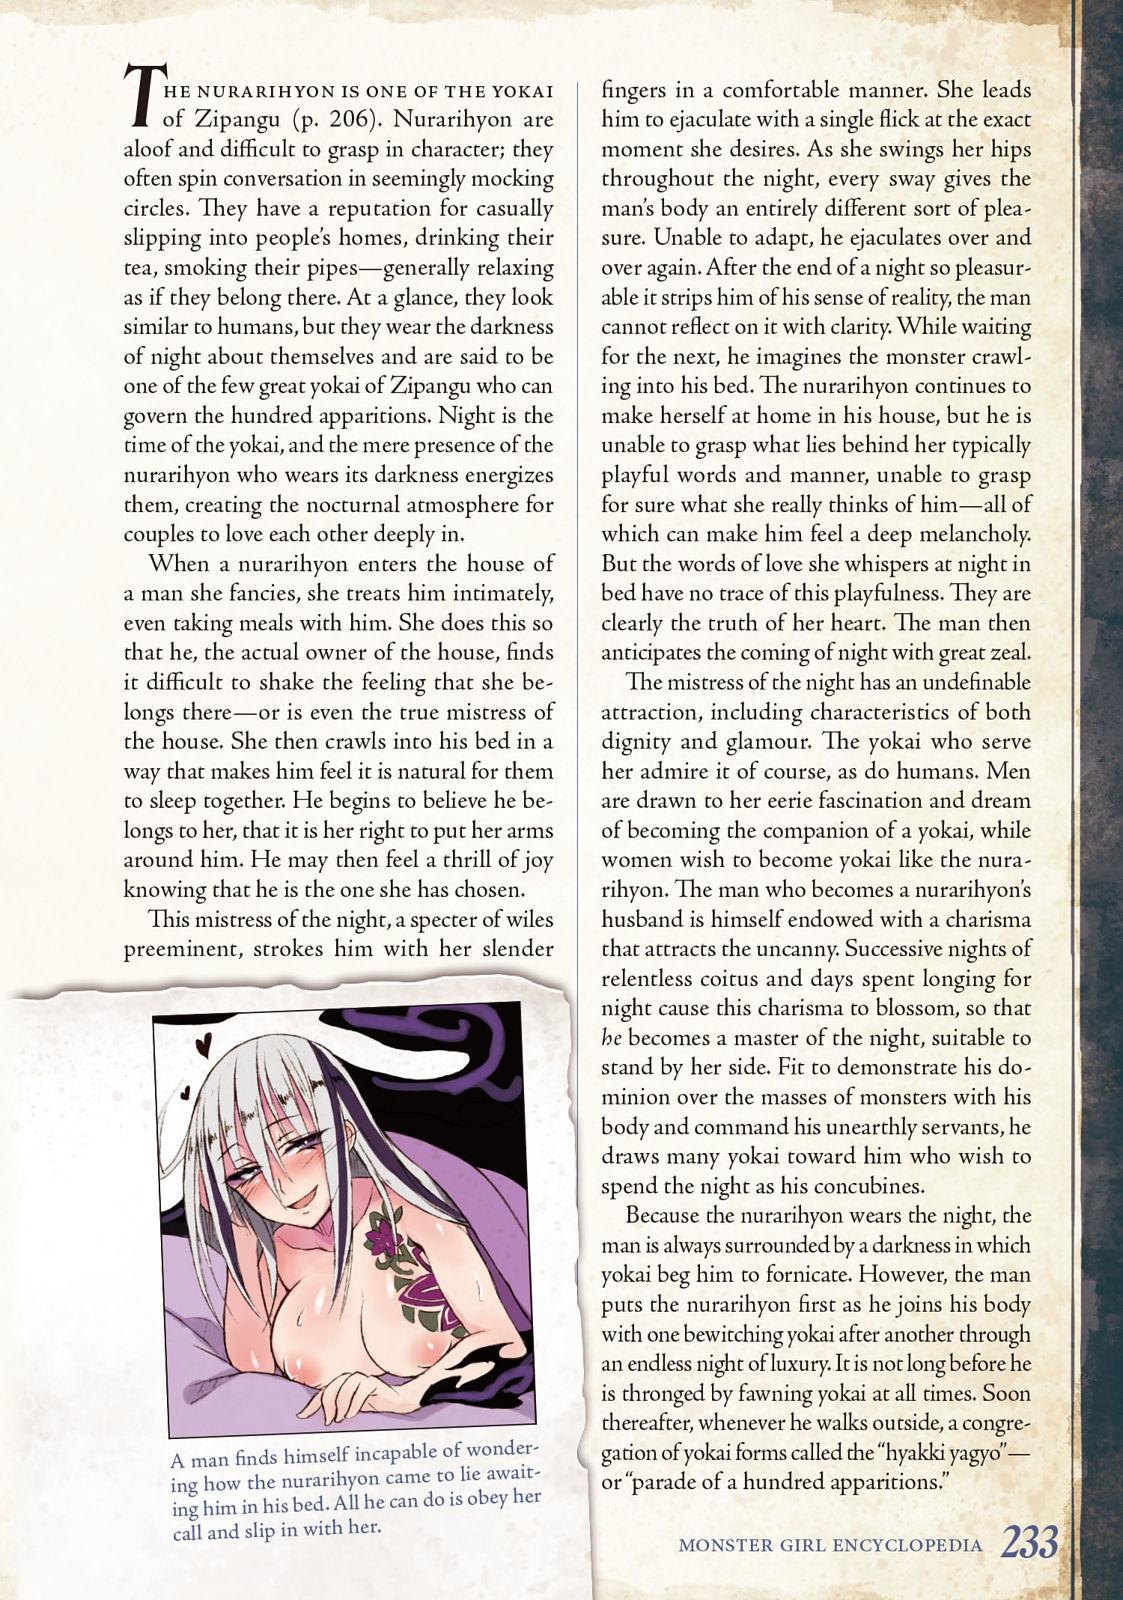 Monster Girl Encyclopedia Vol. 2 233